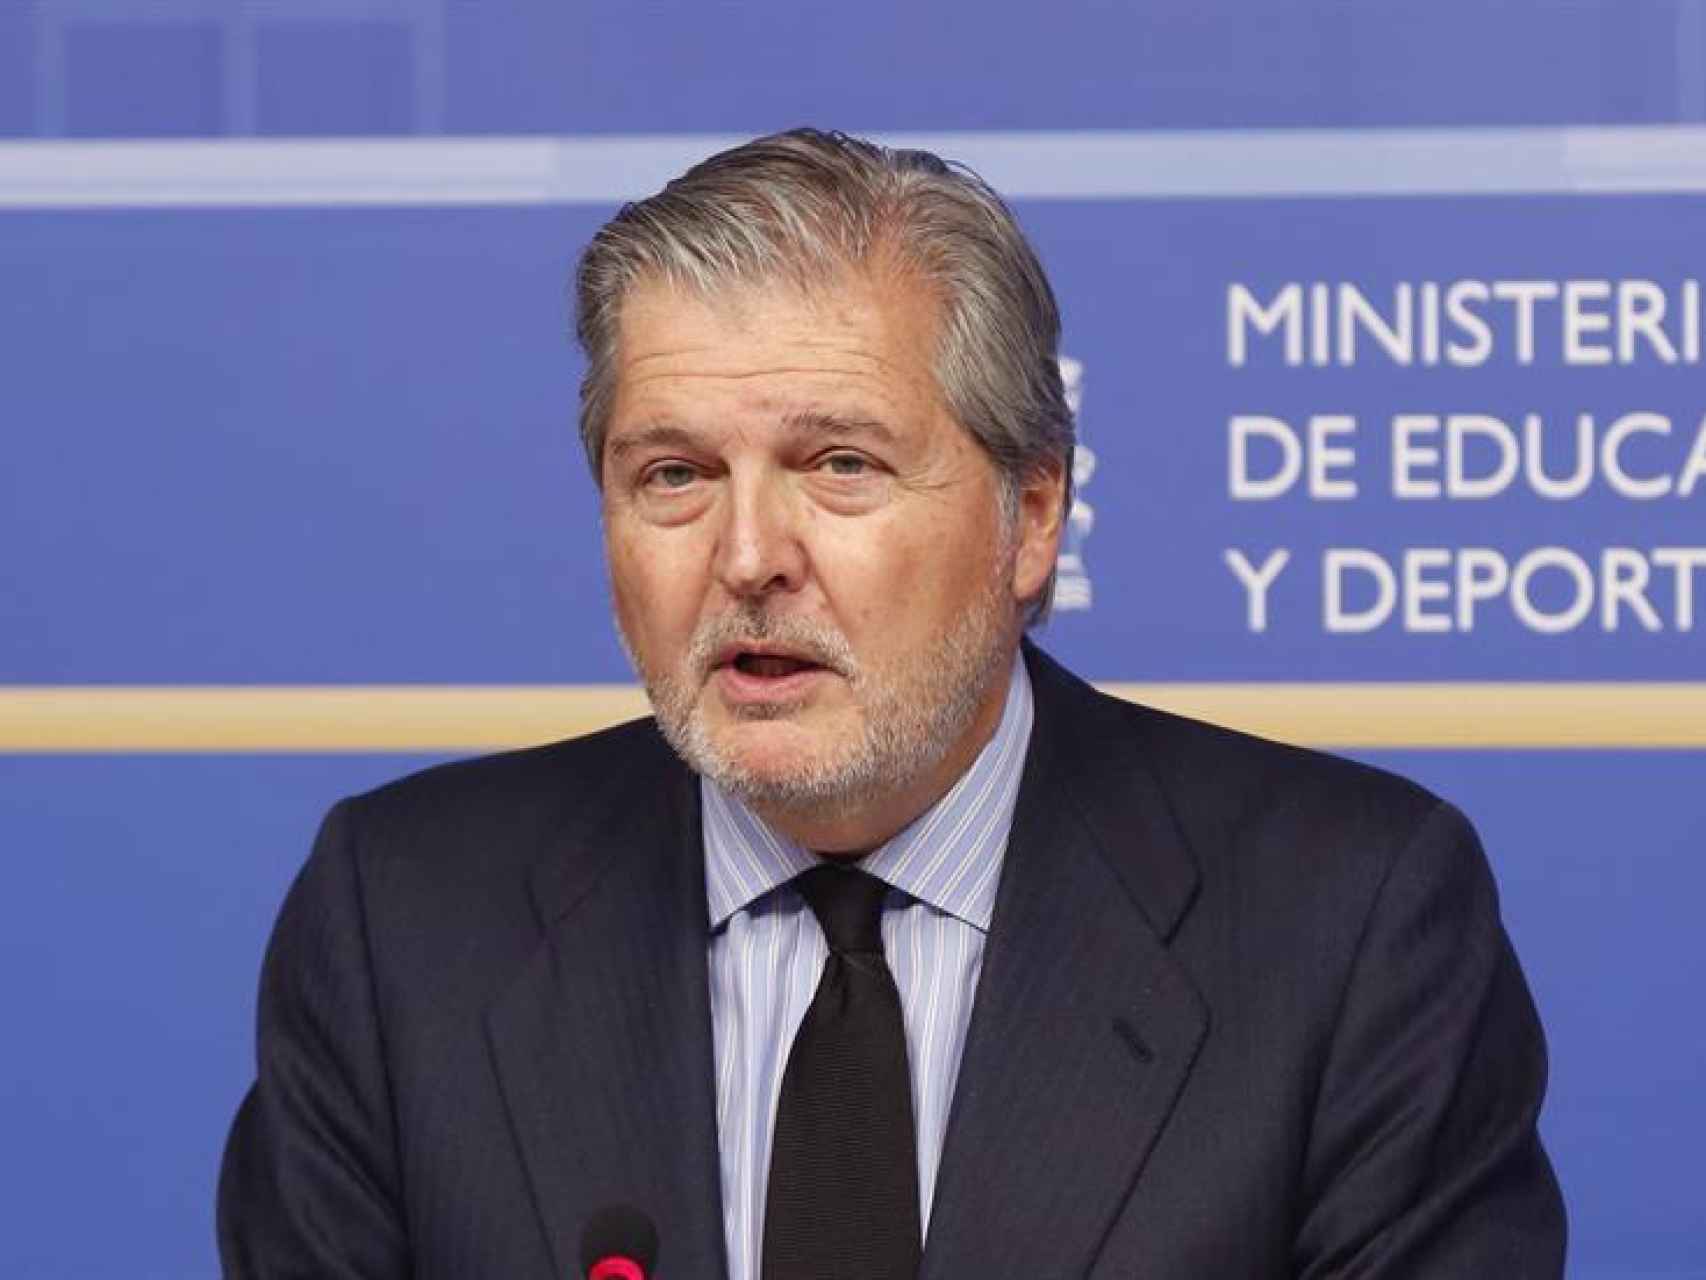 El ministro de Educación y Cultura, Íñigo Méndez de Vigo.